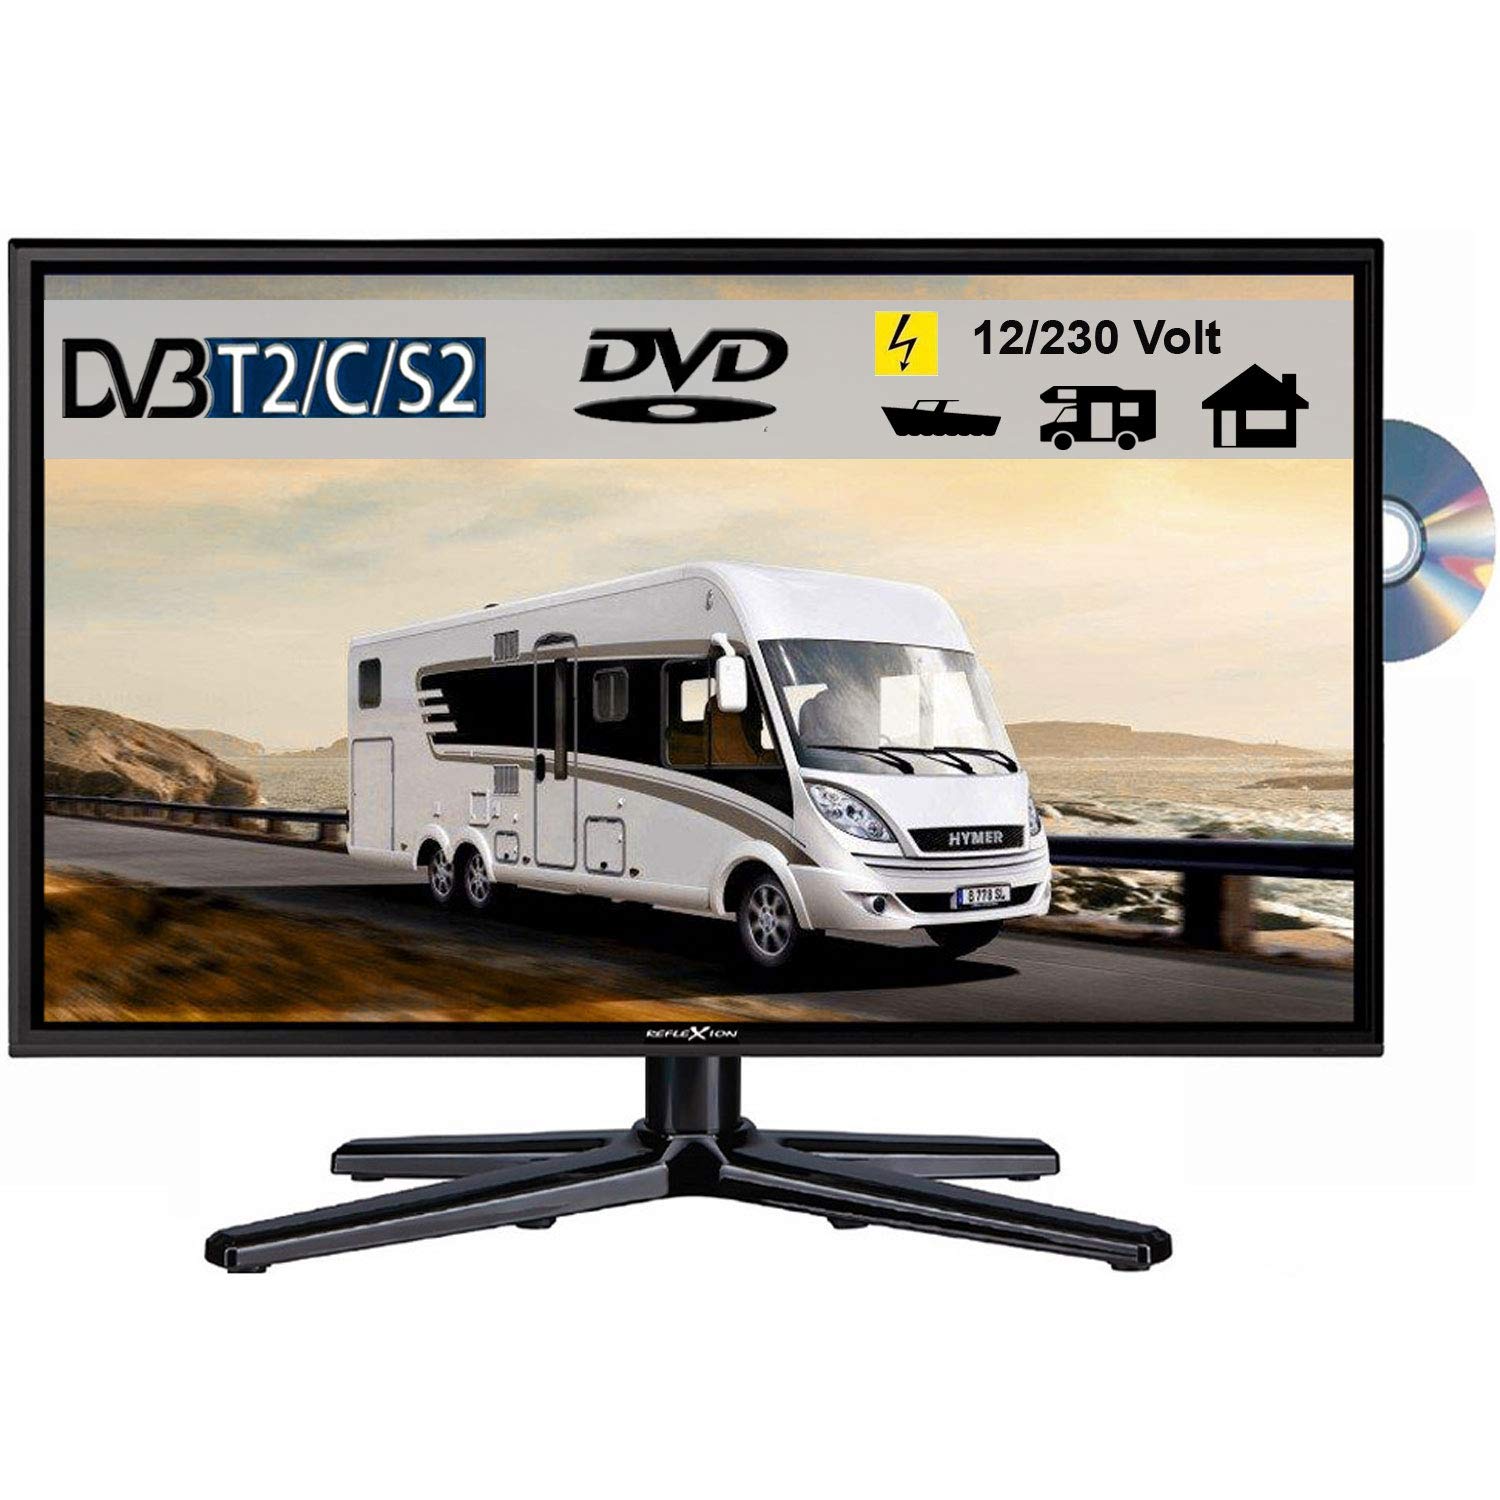 REFLEXION LDDW240 LED Fernseher 23.6 Zoll TV DVB-S2 / C / T2 DVD, 12Volt 230 Volt